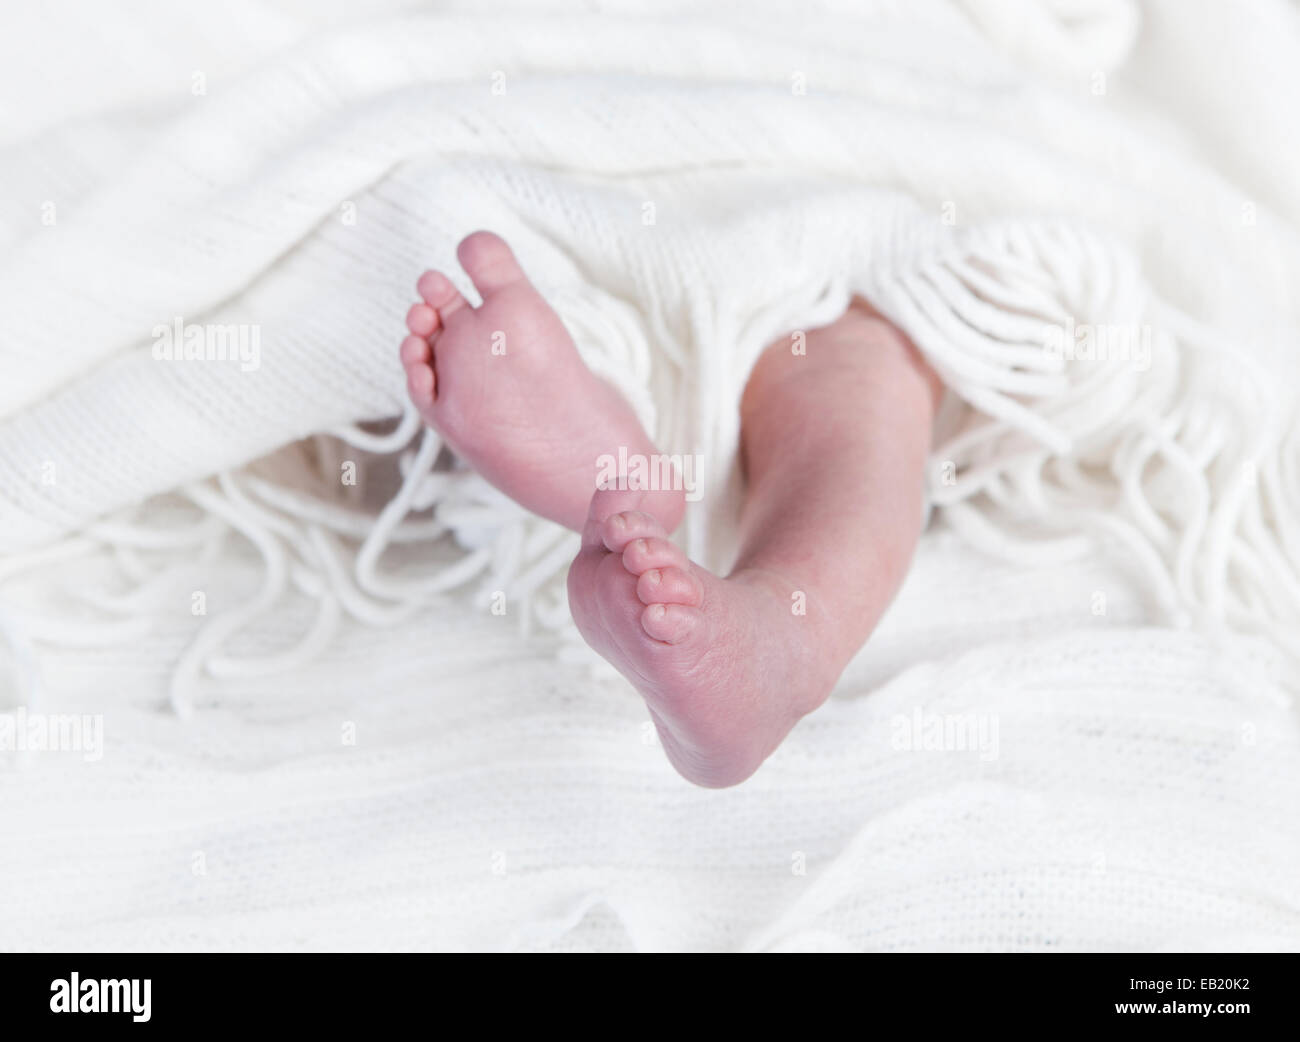 Piedi del bambino di un neonato guarda nella parte anteriore di una coltre bianca Foto Stock